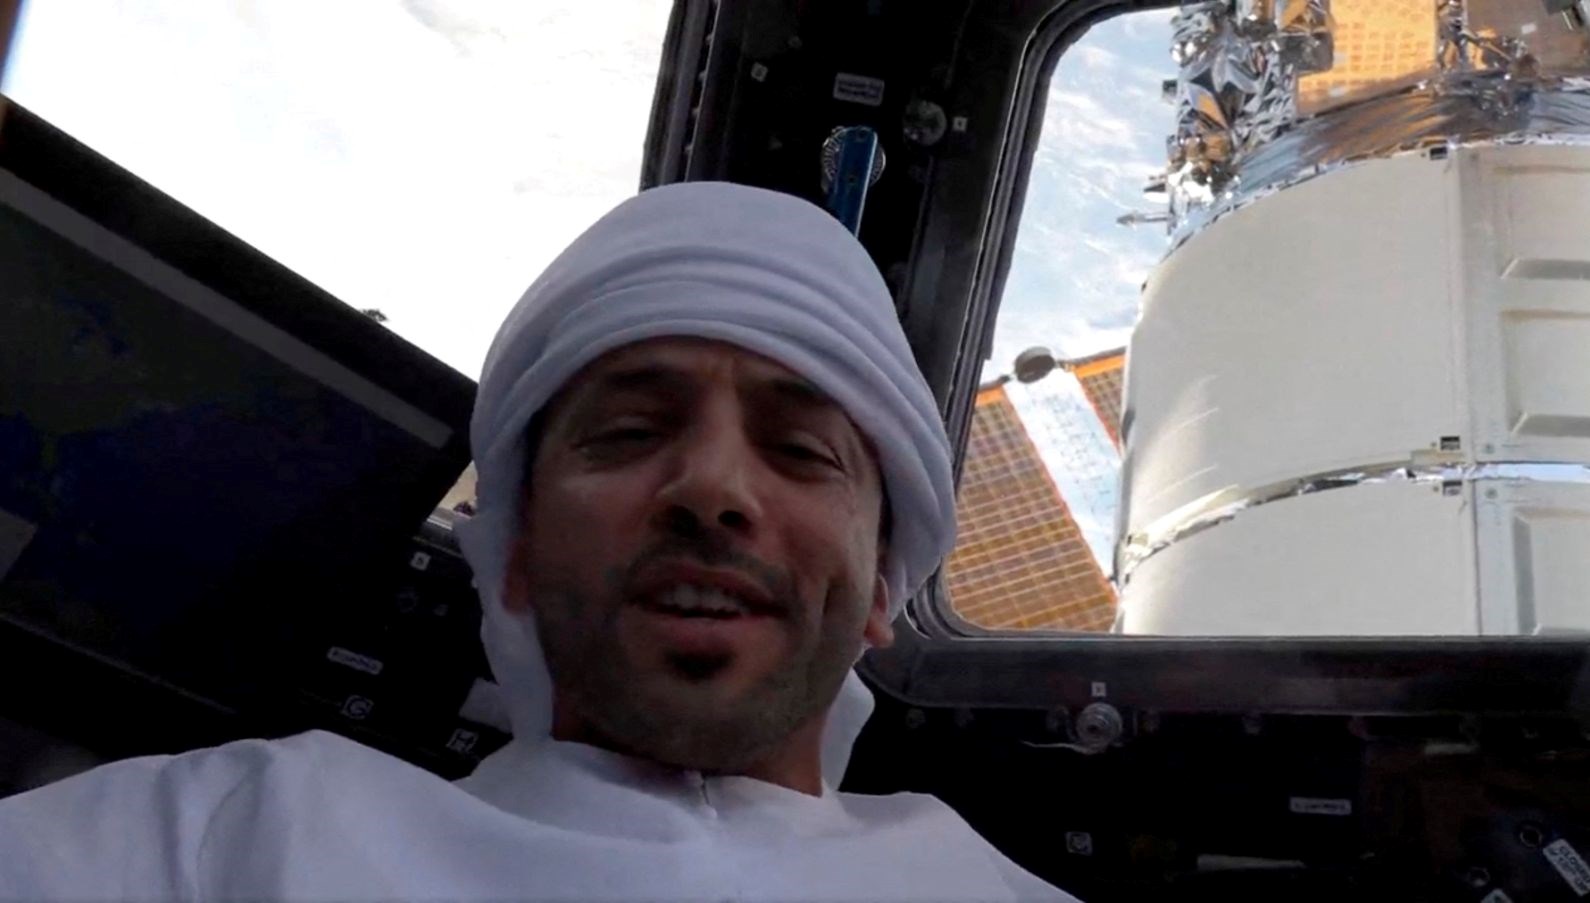 Uzay tarihine geçti: Uzay yürüyüşü yapan birinci Arap astronot oldu